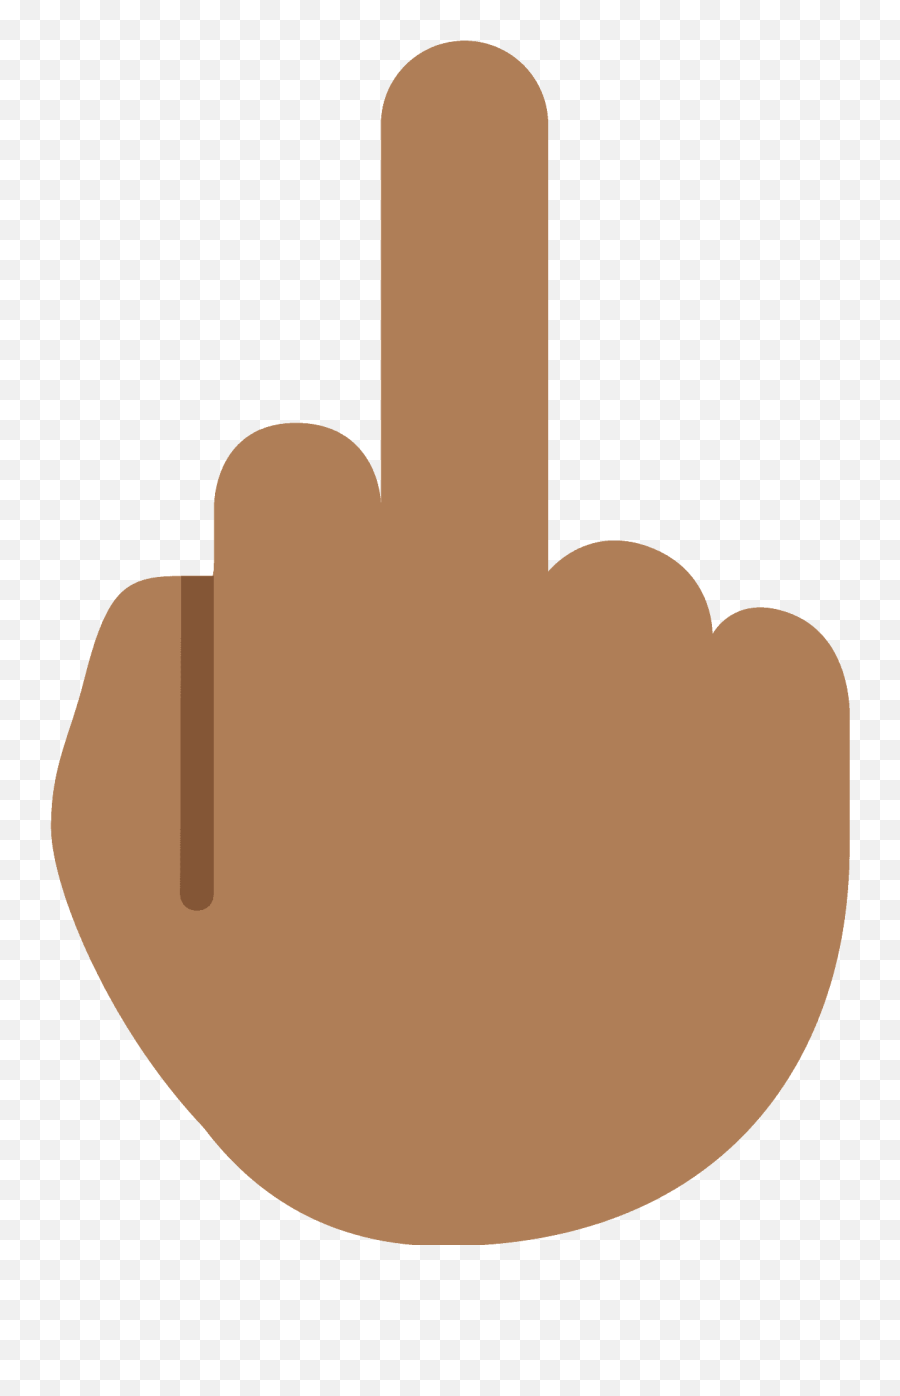 Middle Finger Emoji Clipart Free Download Transparent Png - Middle Finger Emoj,Vulcan Salute Emoji For Android